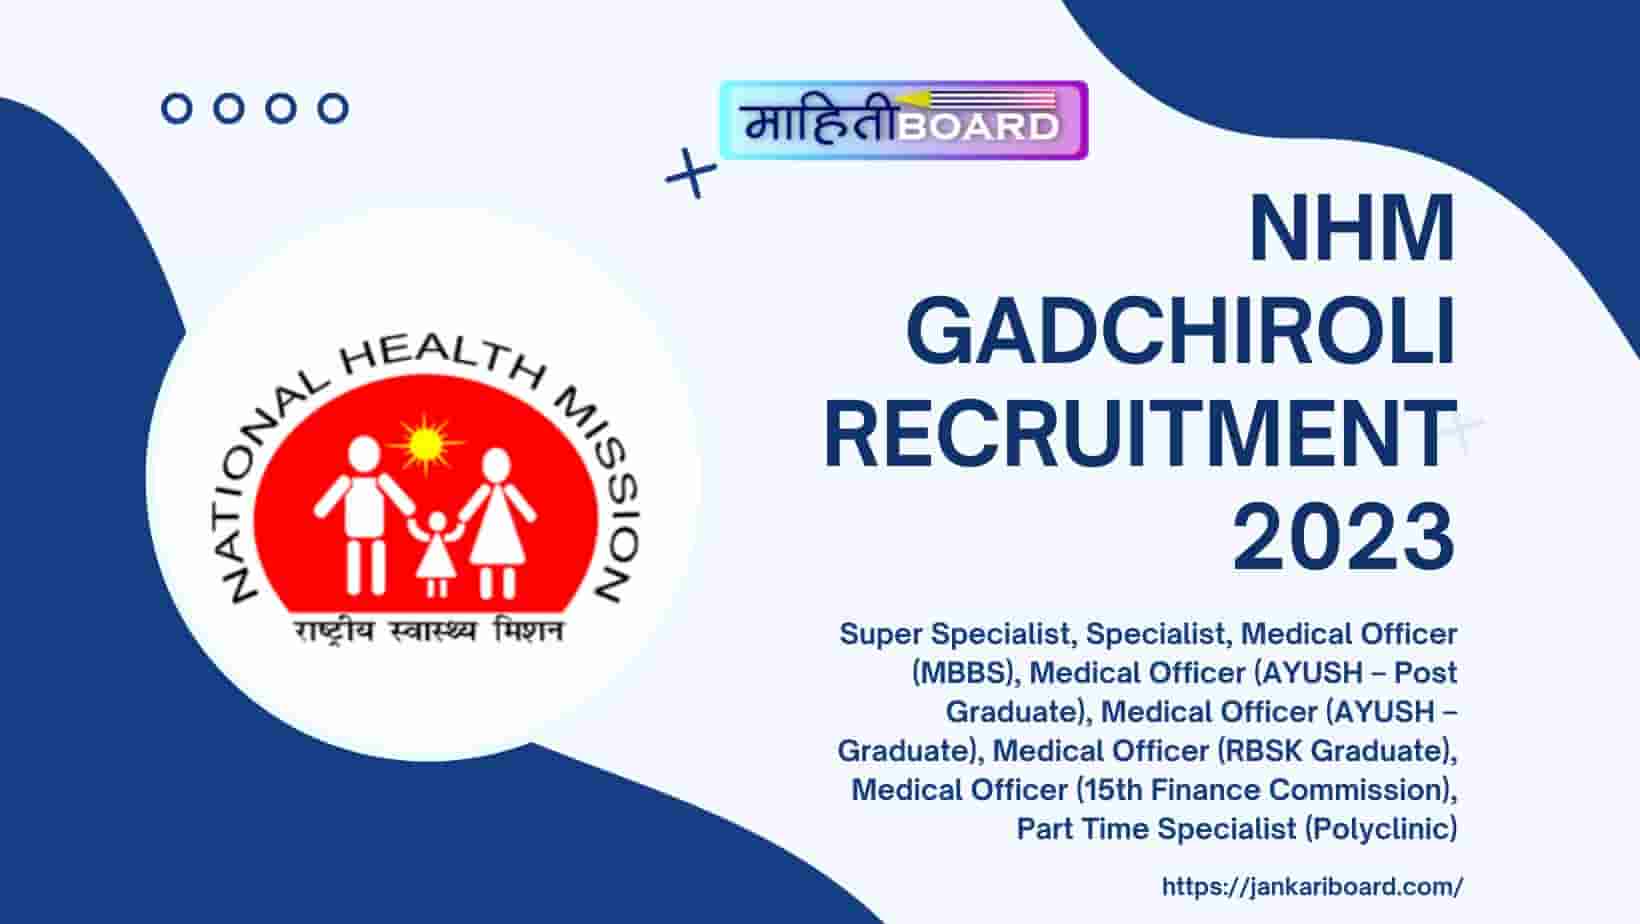 NHM Gadchiroli Recruitment 2023